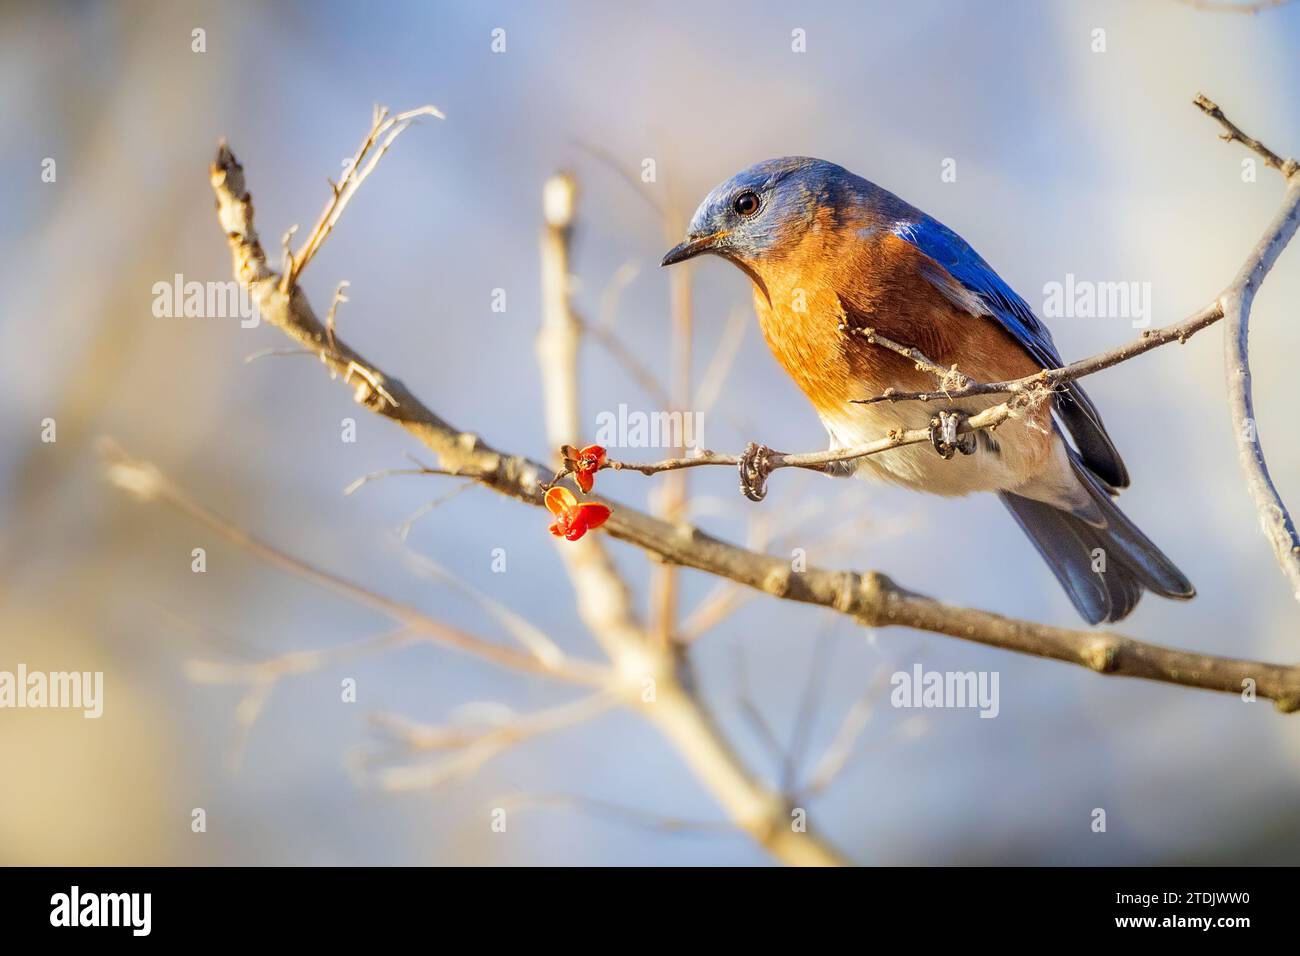 Un Bluebird oriental se alimenta de pequeñas bayas rojas Foto de stock